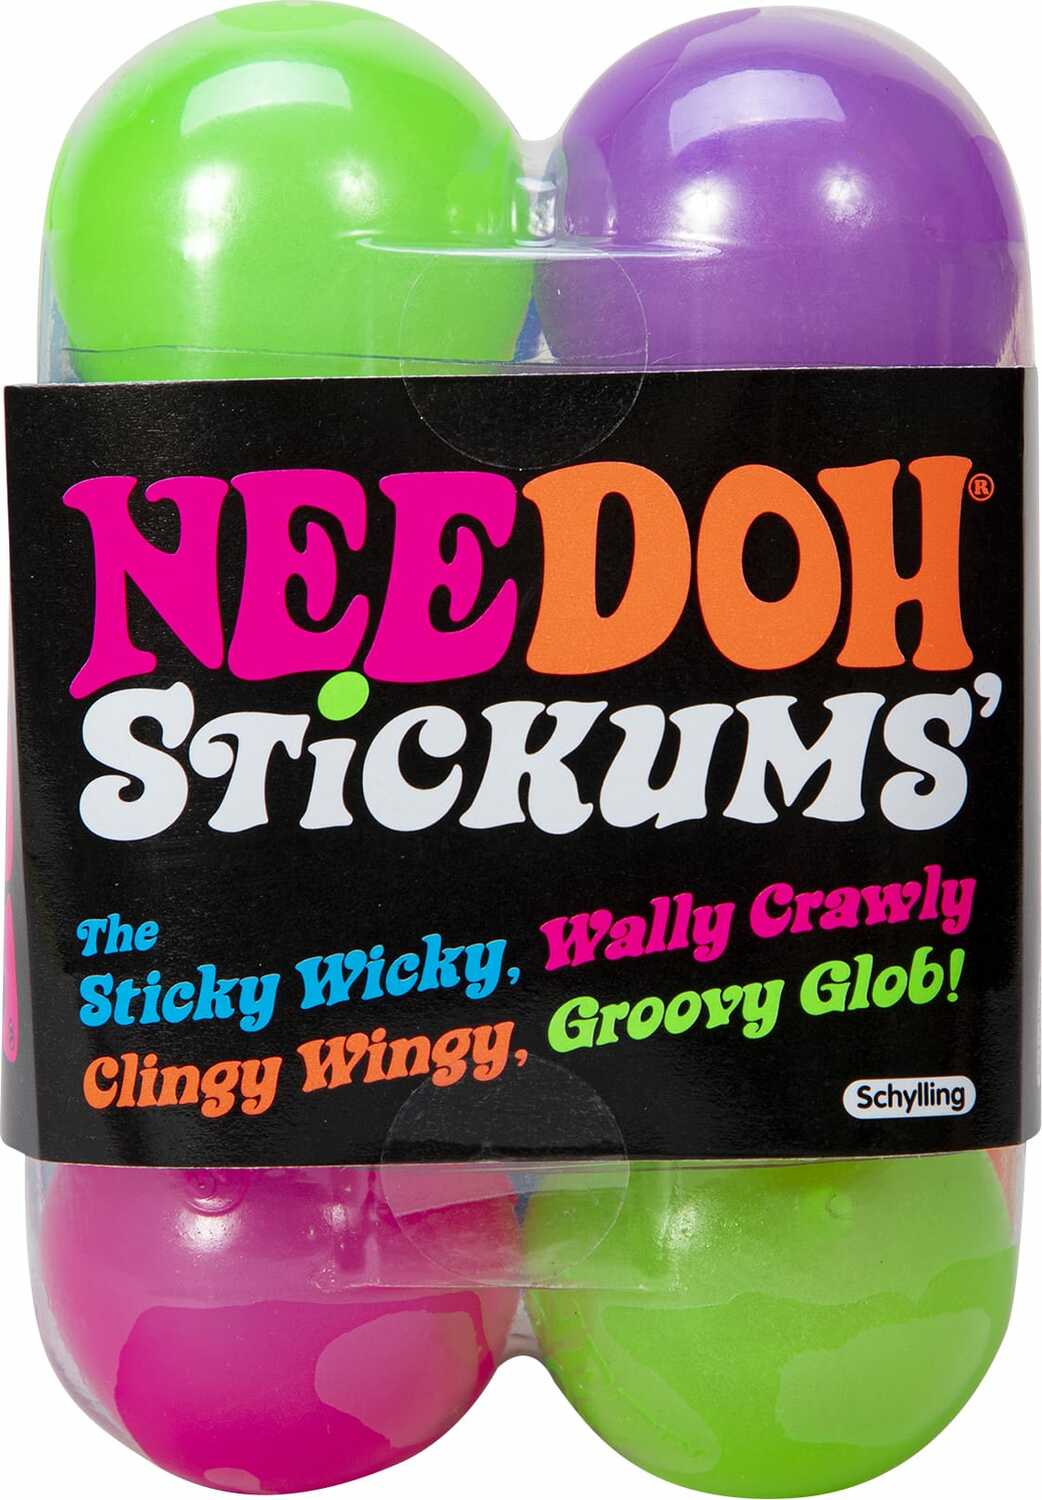 NeeDoh Stickums